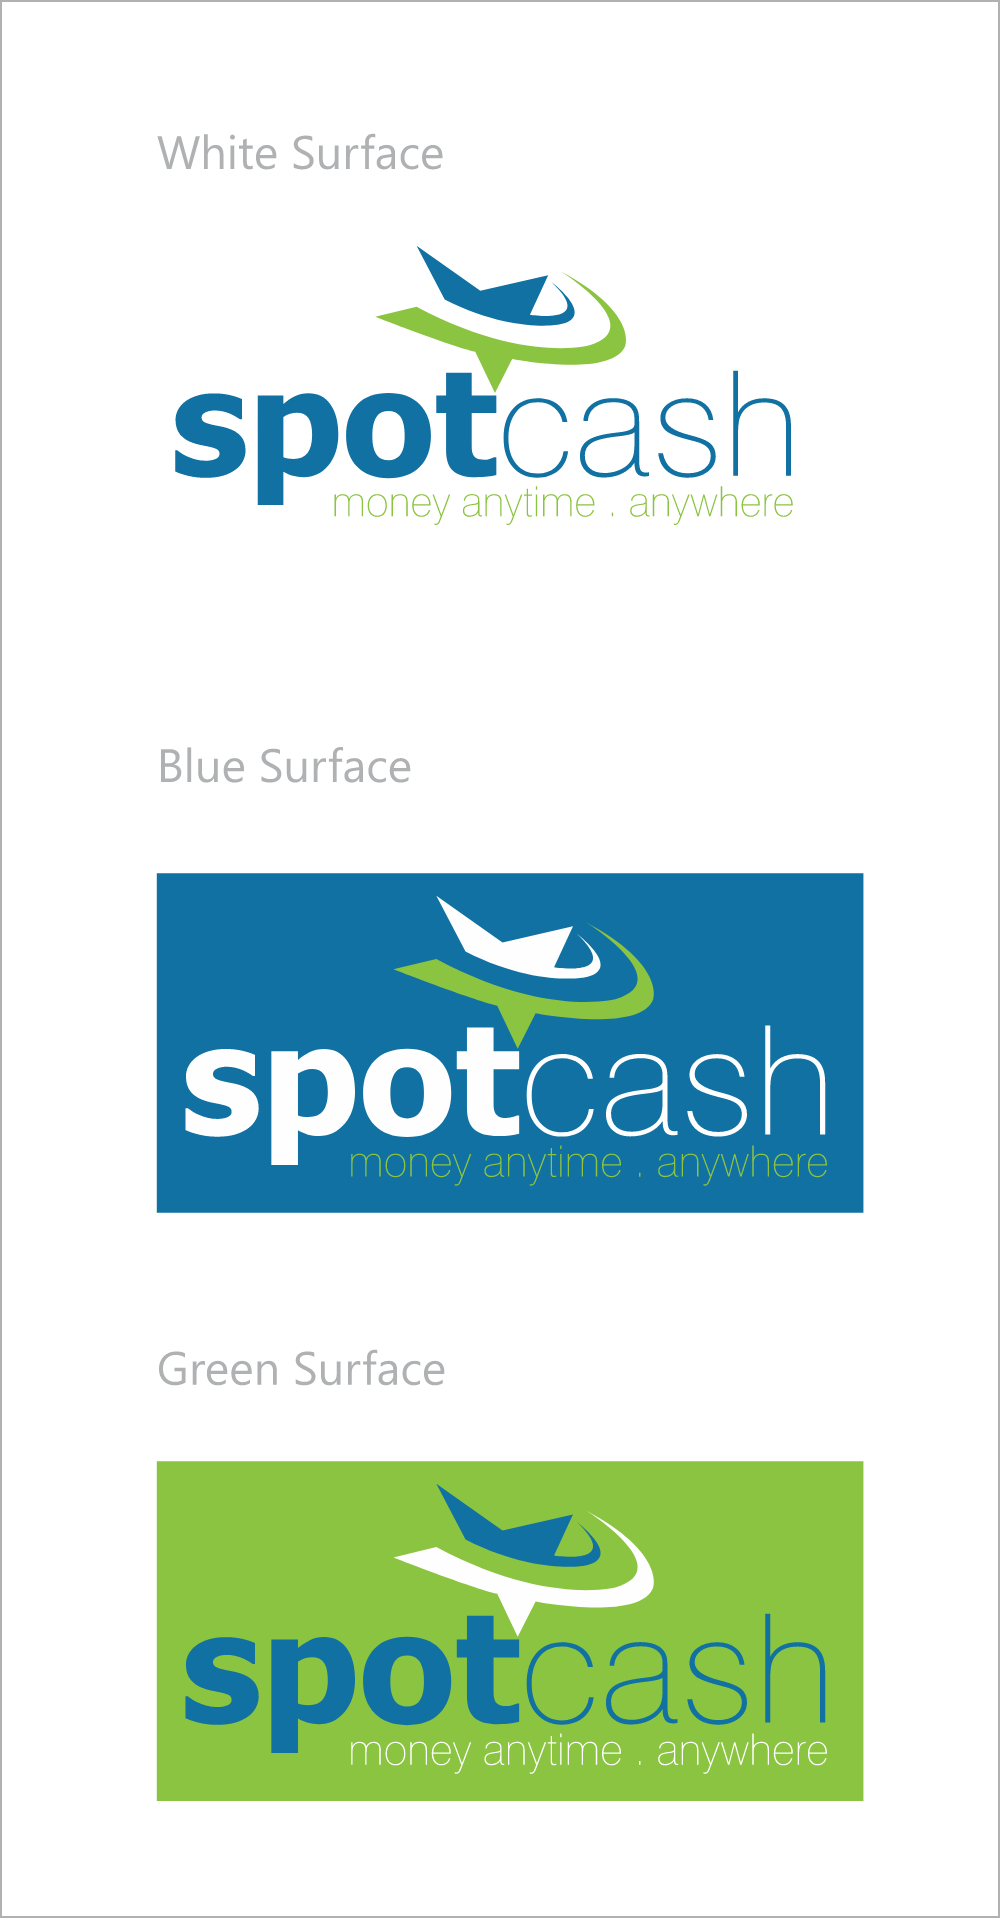 SpotCash Mobile Banking Logo Logos